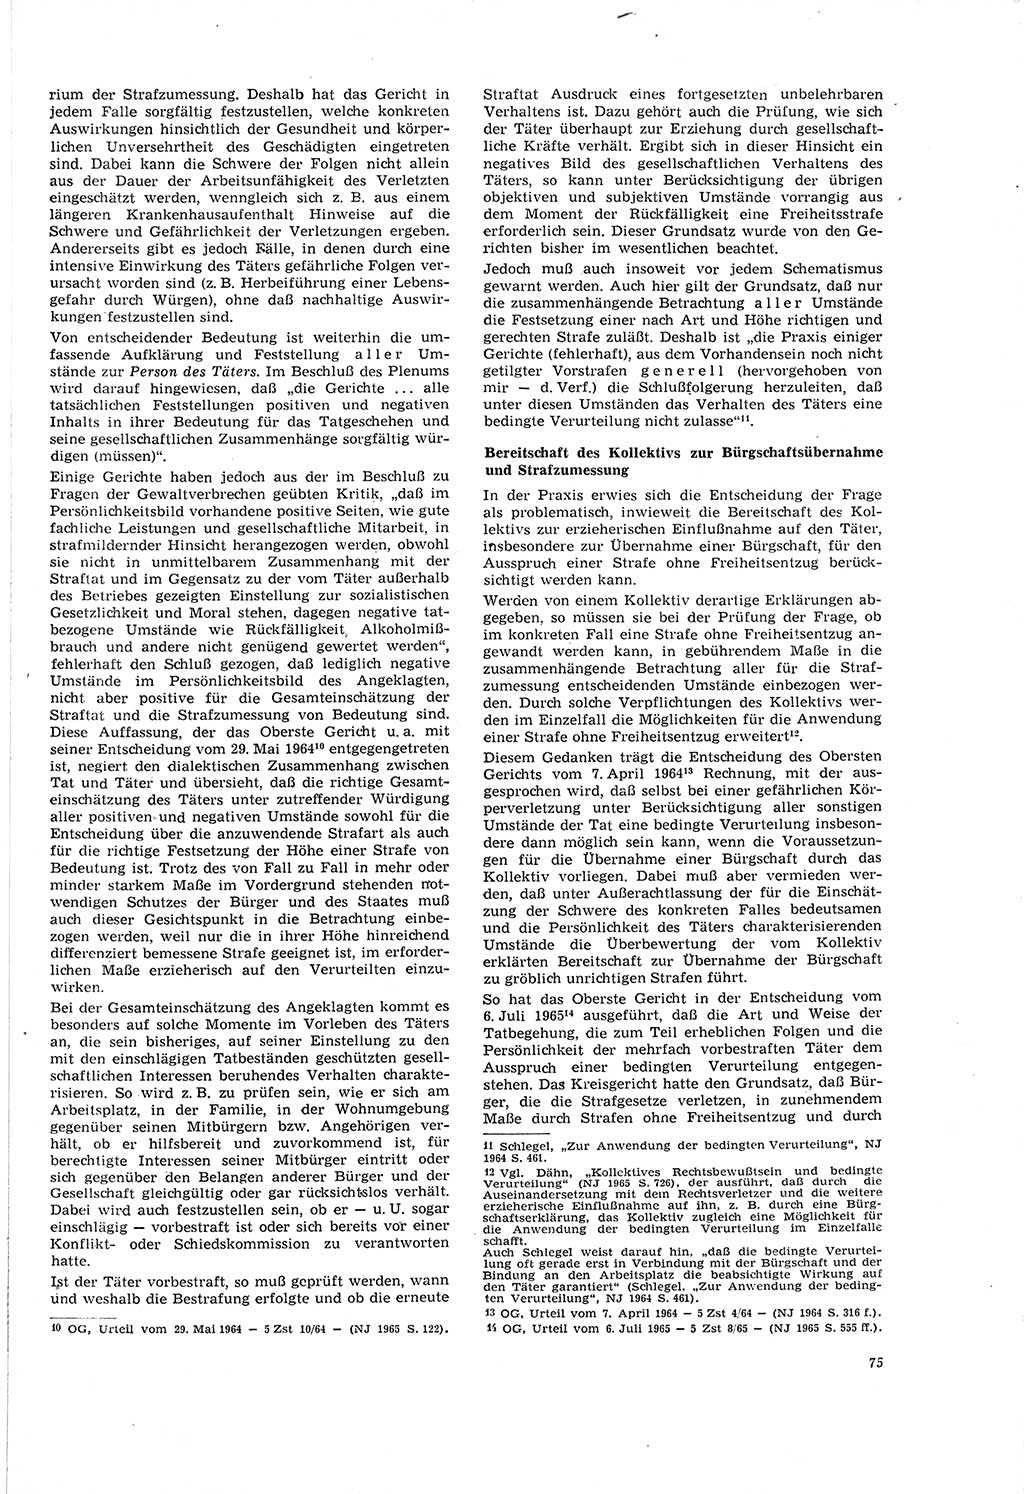 Neue Justiz (NJ), Zeitschrift für Recht und Rechtswissenschaft [Deutsche Demokratische Republik (DDR)], 20. Jahrgang 1966, Seite 75 (NJ DDR 1966, S. 75)